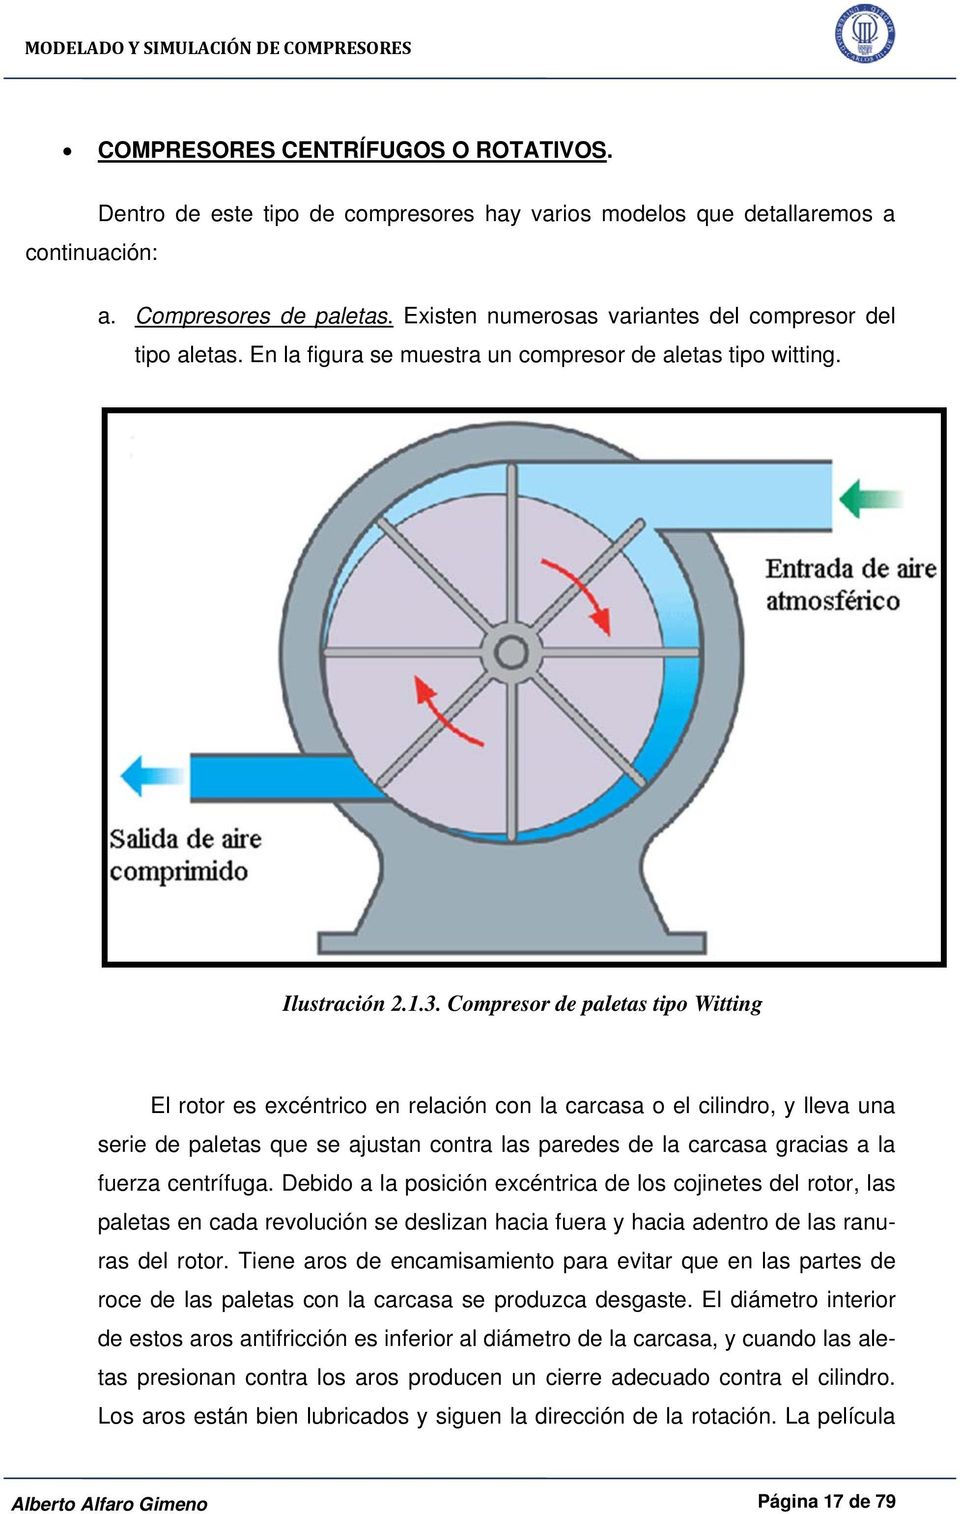 Compresor de paletas tipo Witting El rotor es excéntrico en relación con la carcasa o el cilindro, y lleva una serie de paletas que se ajustan contra las paredes de la carcasa gracias a la fuerza